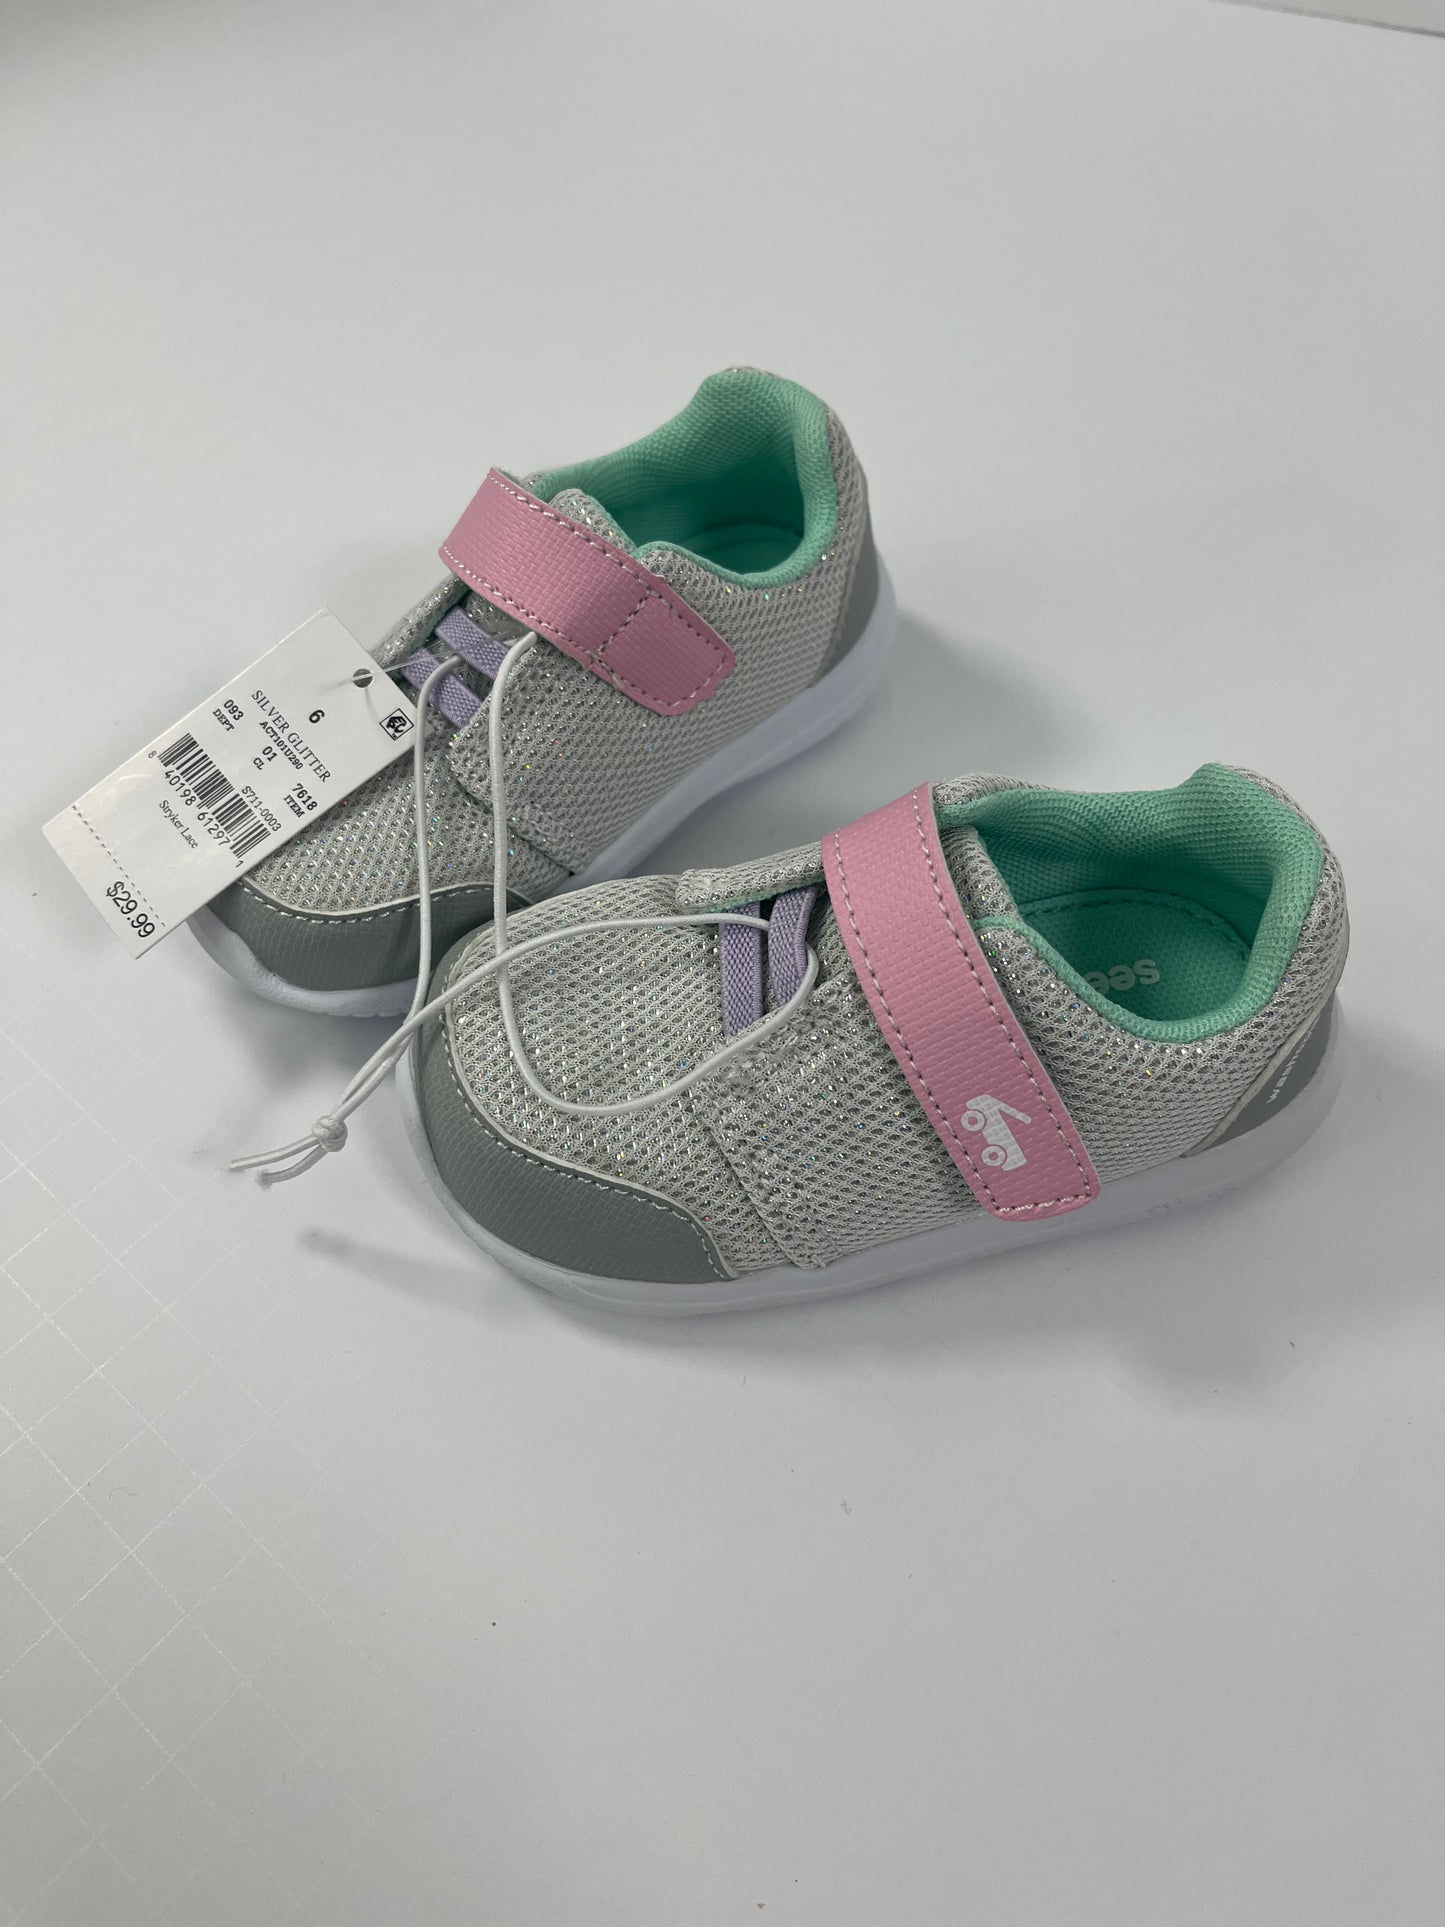 PPU 45242 girls See Kai Run Basic (Target) size 6 sneakers